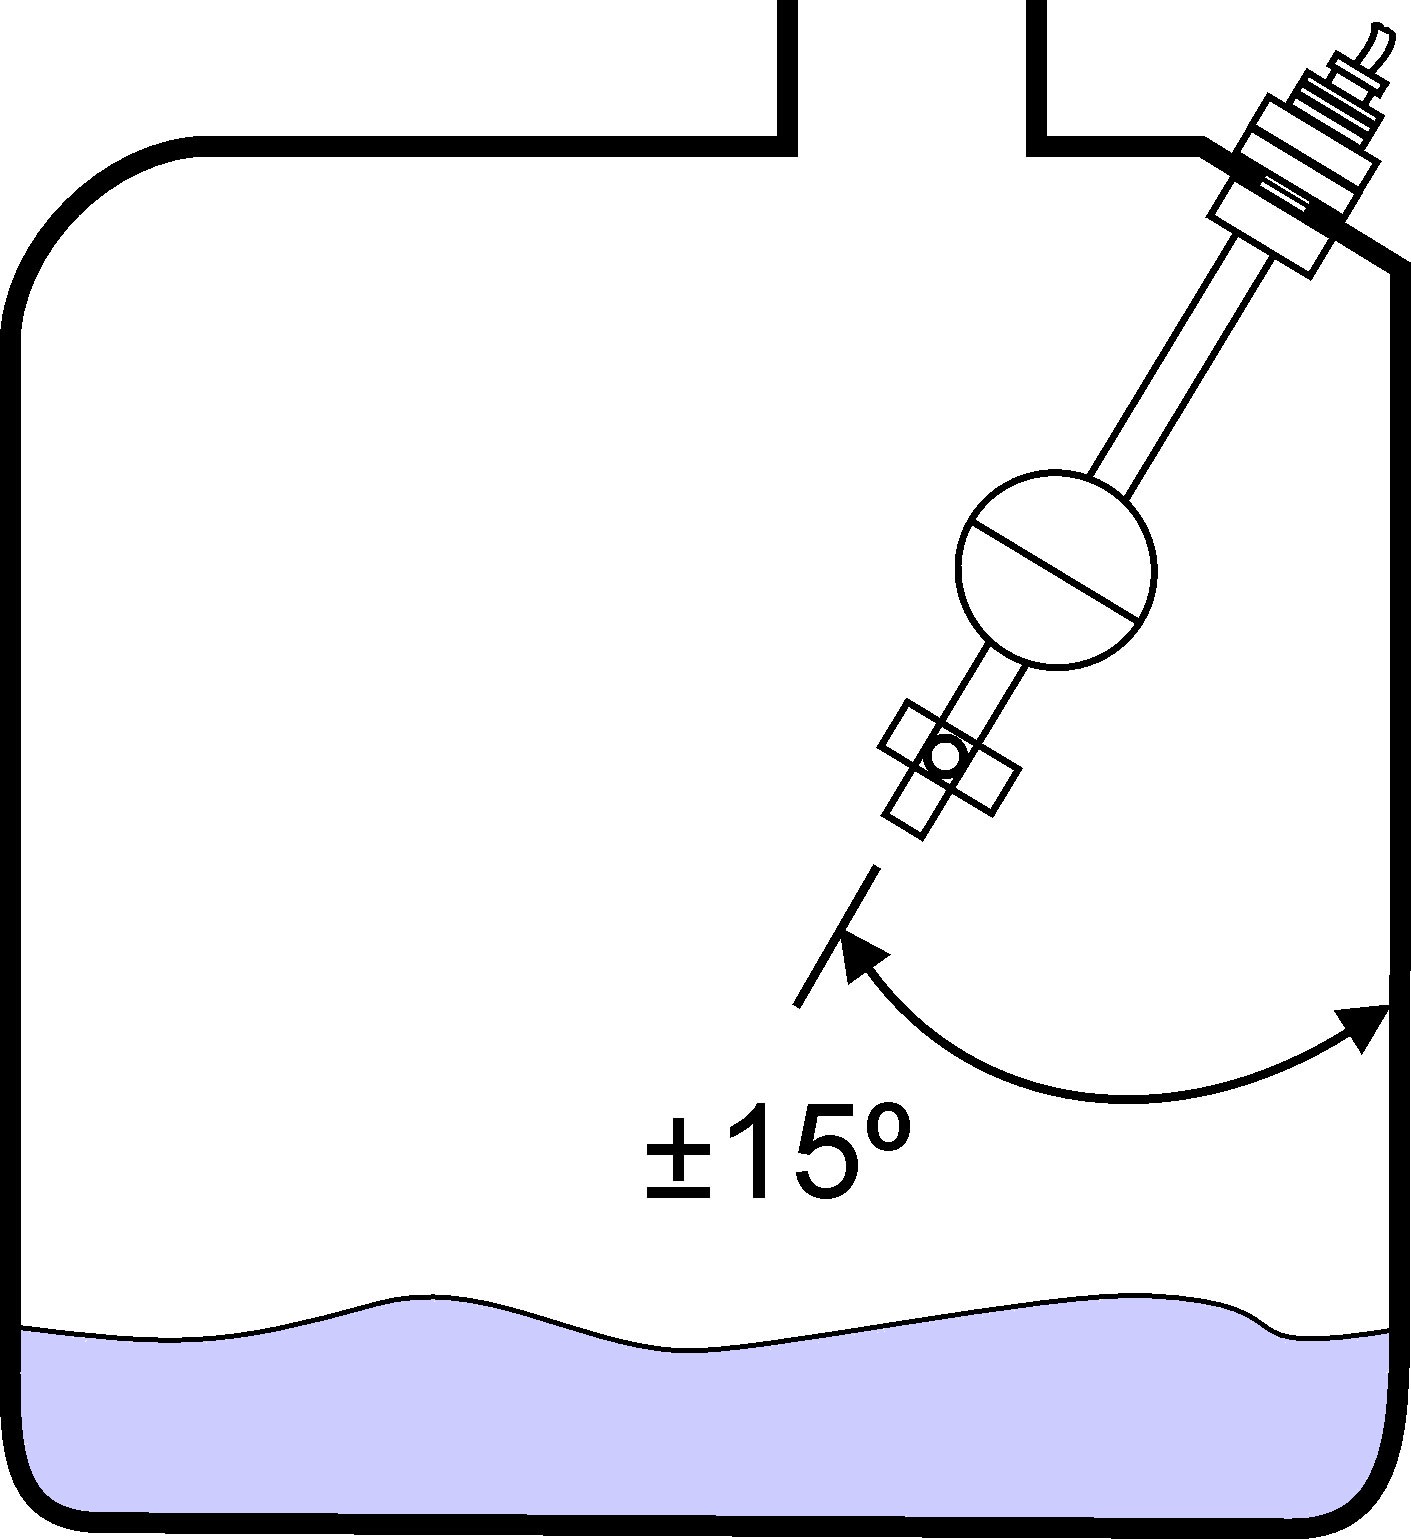 Plovákový spínač instalovaný na zásobníku pod úhlem 15°